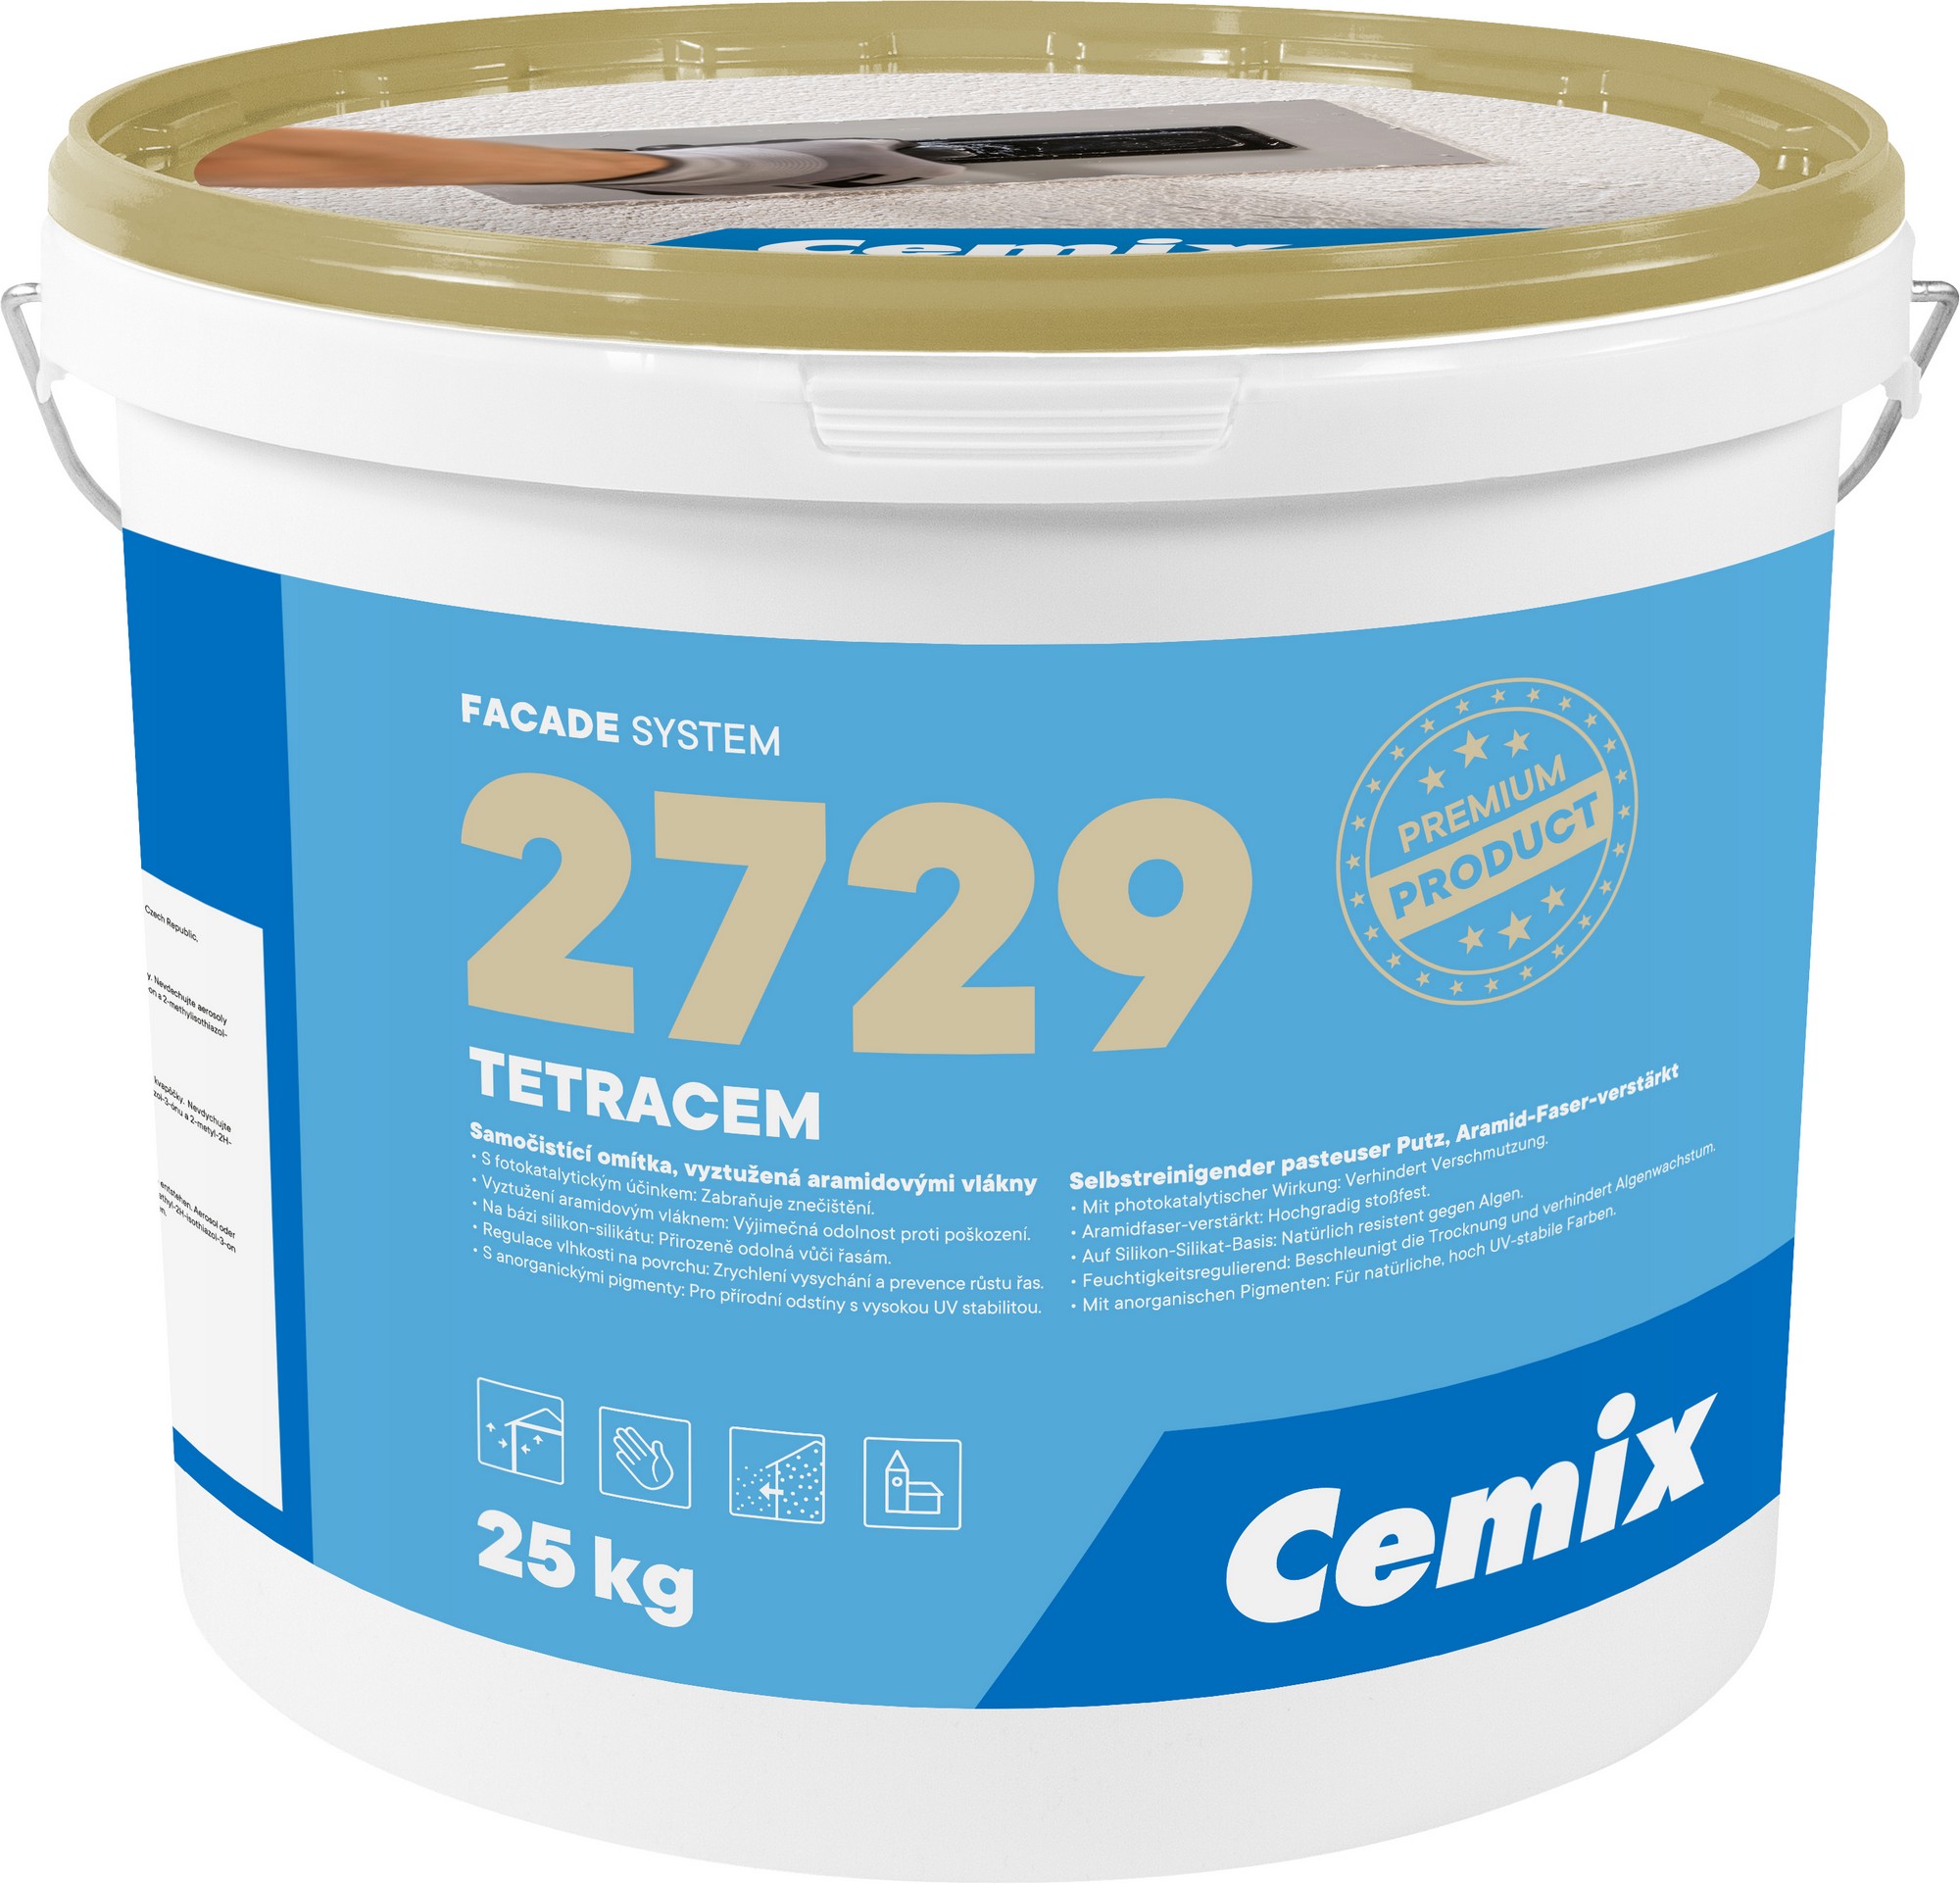 Omítka samočisticí Cemix 2729 TETRACEM Z 1,0 mm